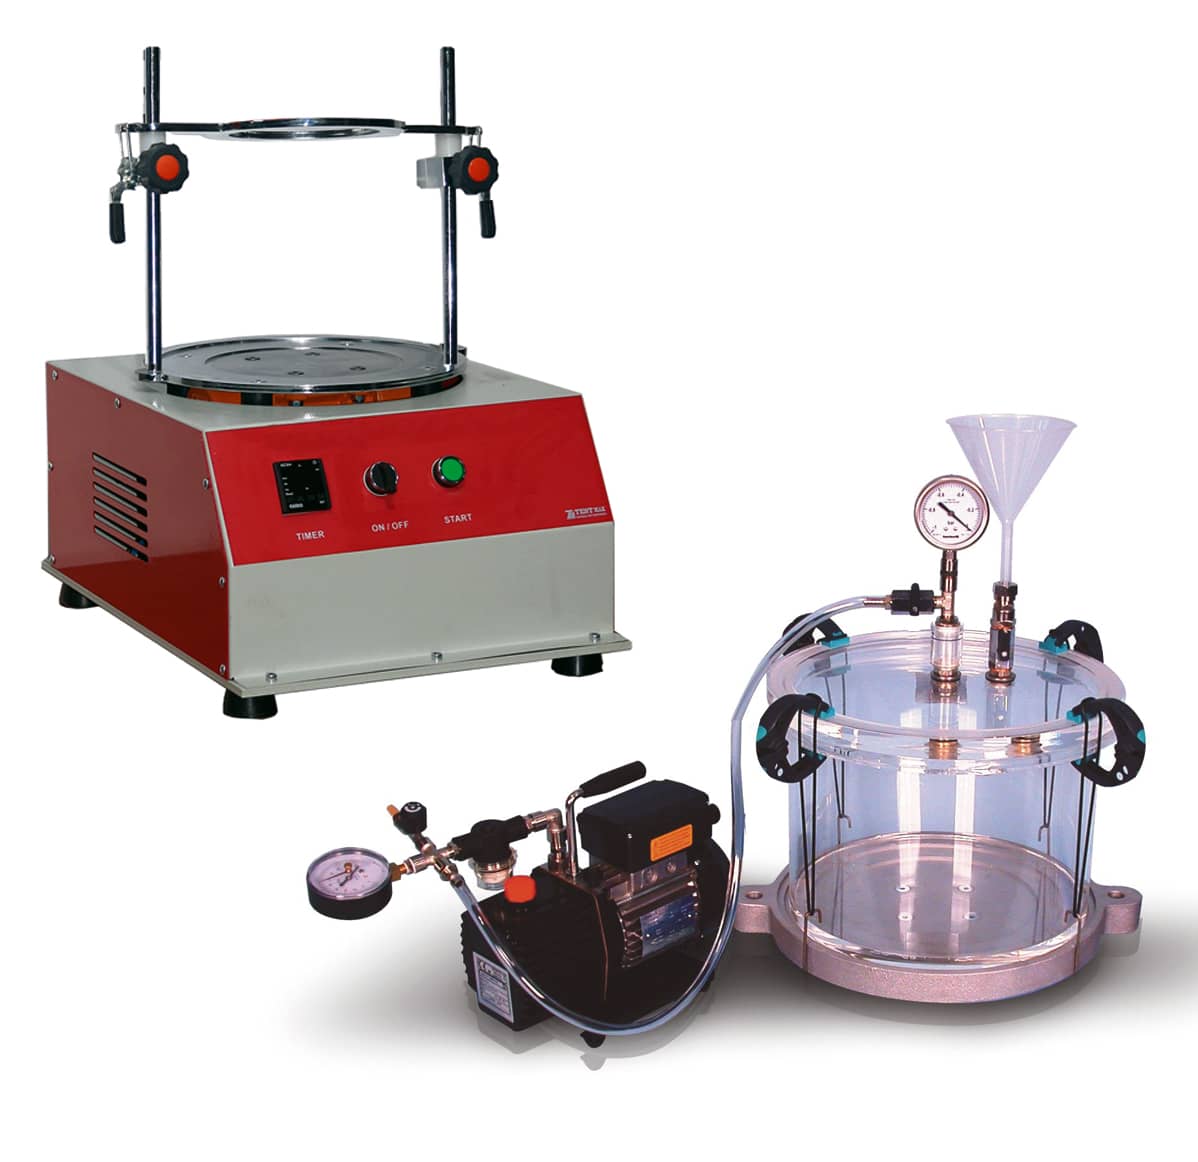 Pycnomètre Yale de 10 litres de contenance - Analyse des mélanges bitumineux  - Testmak Material Testing Equipment